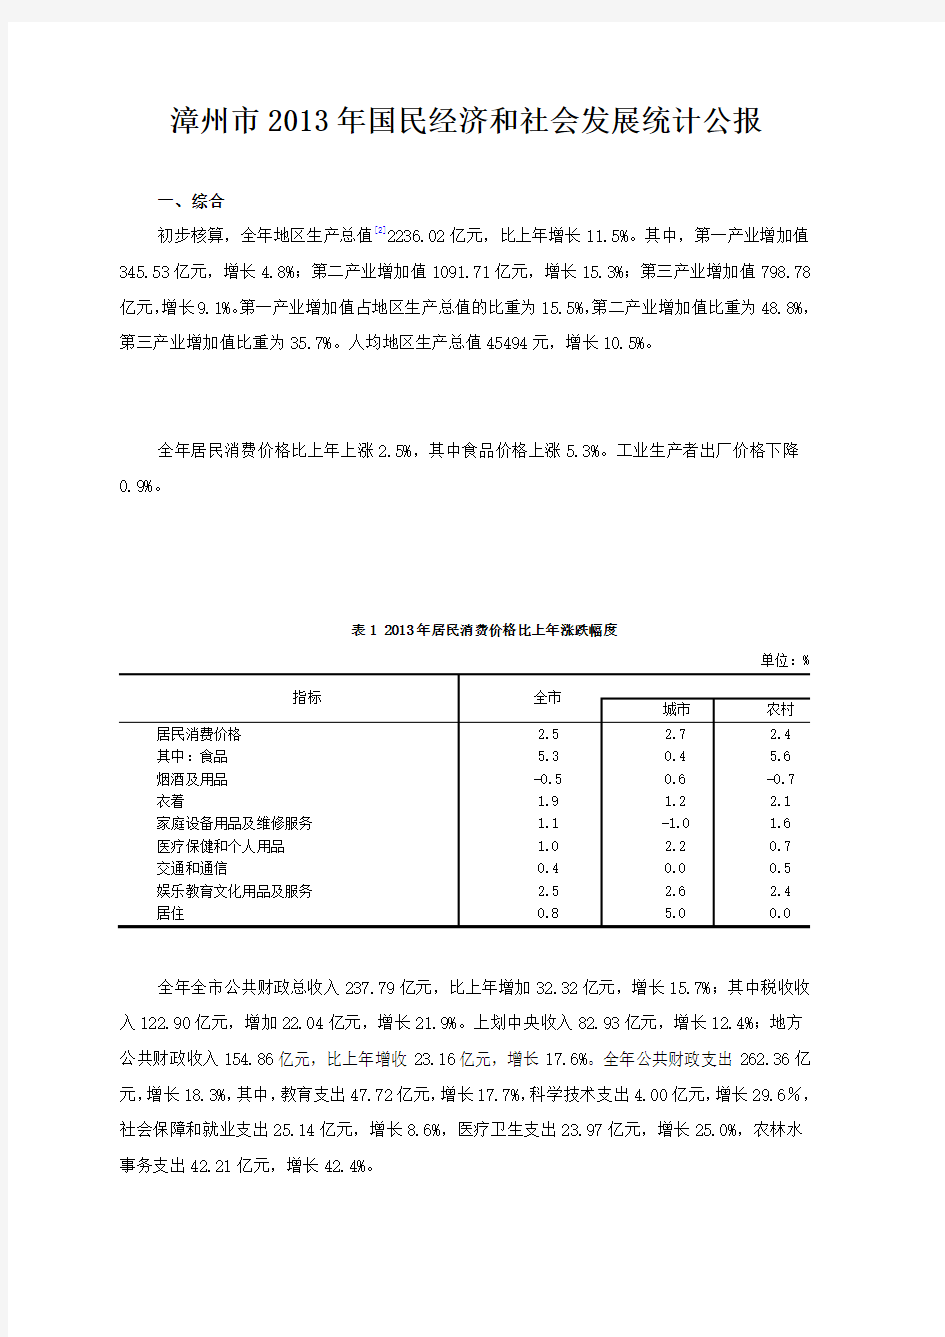 漳州市2013年国民经济和社会发展统计公报